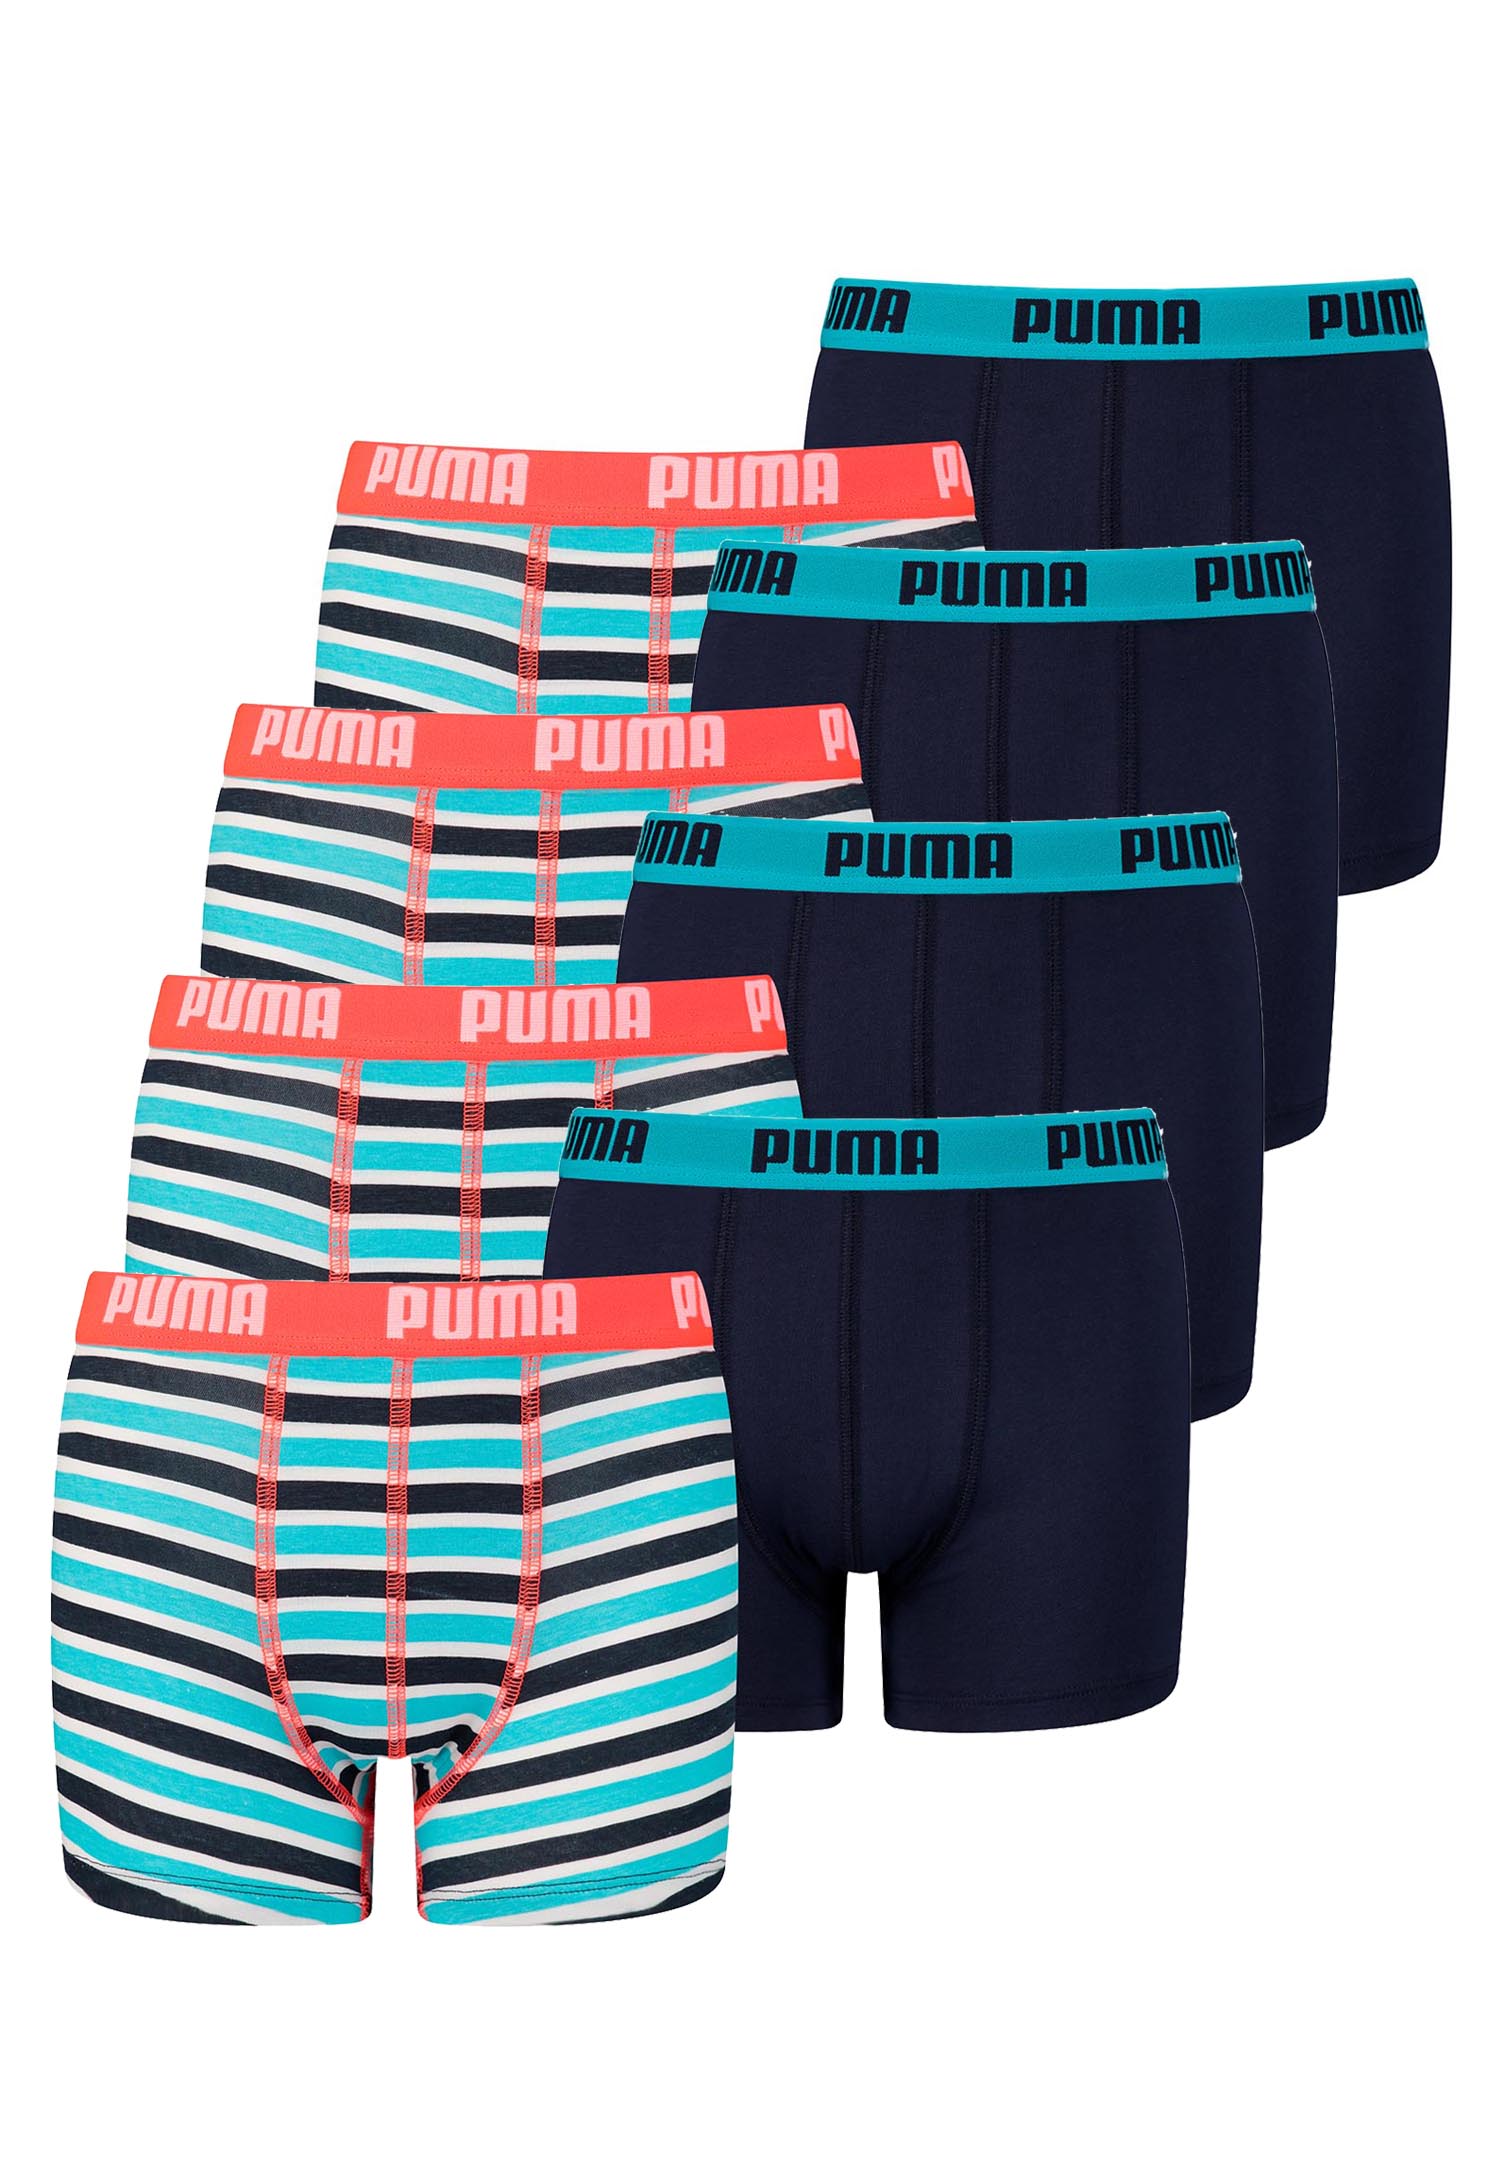 8er Pack Puma Basic Boxer Printed Stripes Boxershorts Jungen Kinder Unterhose